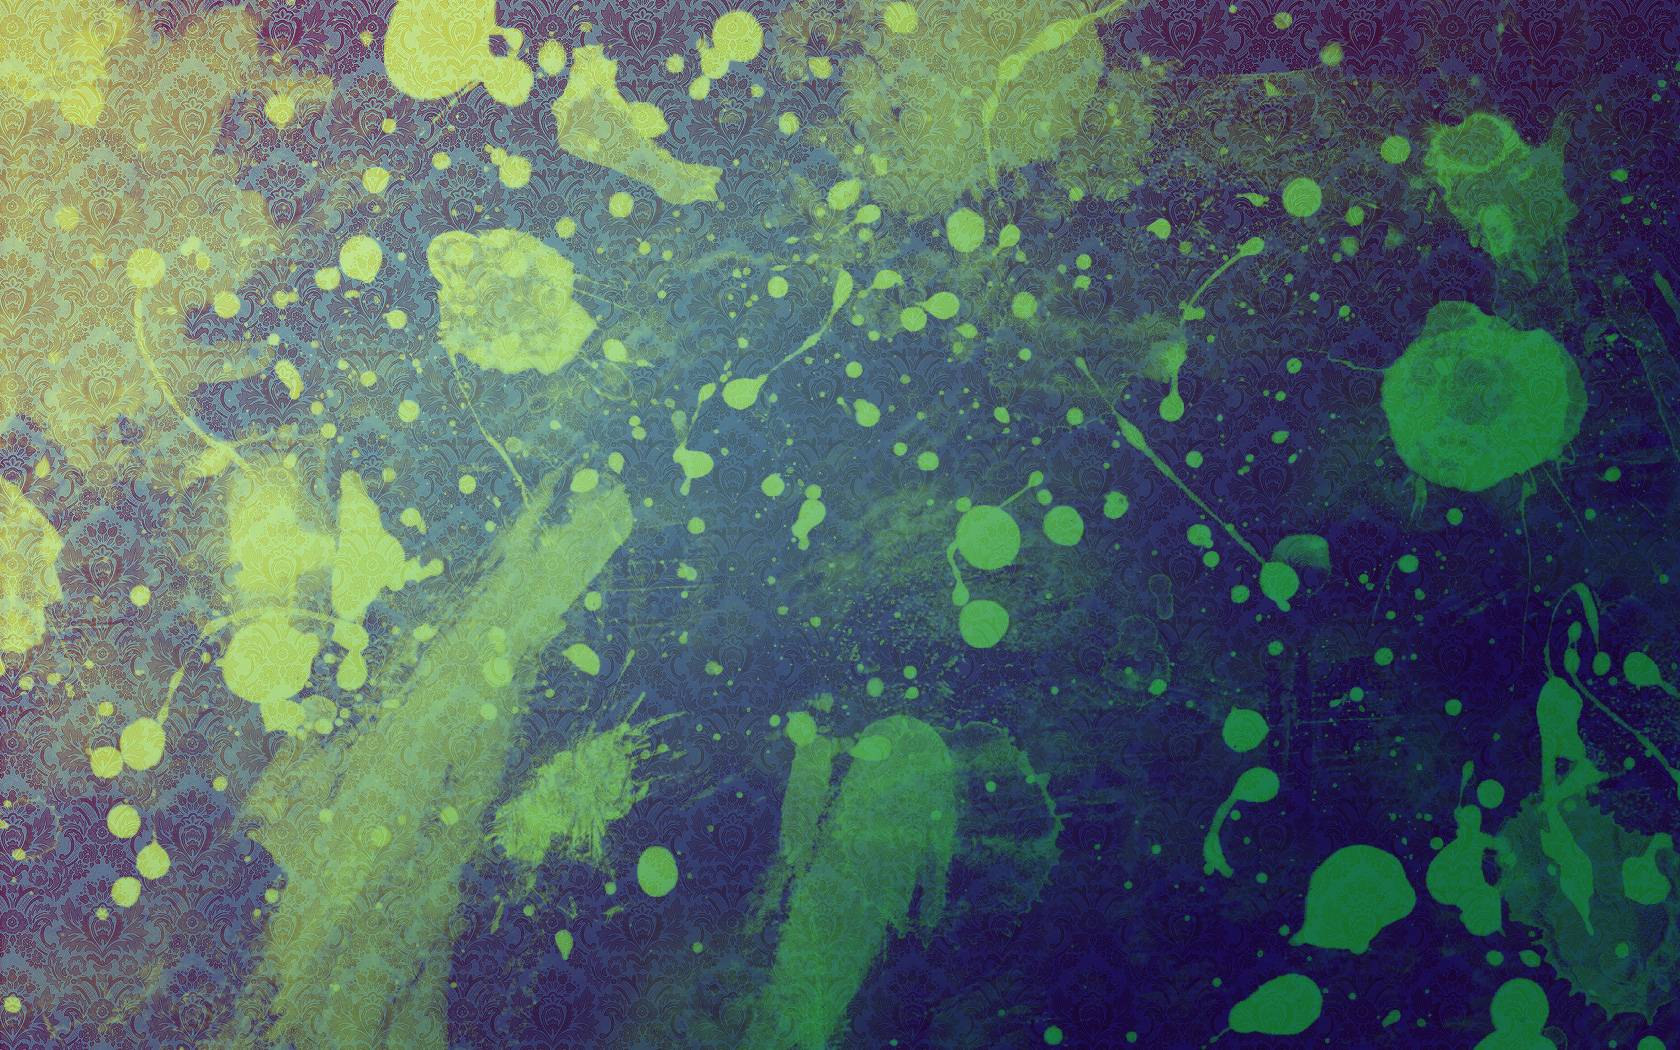 Paint Splatter Wallpapers Wallpaper Cave HD Wallpapers Download Free Images Wallpaper [wallpaper981.blogspot.com]